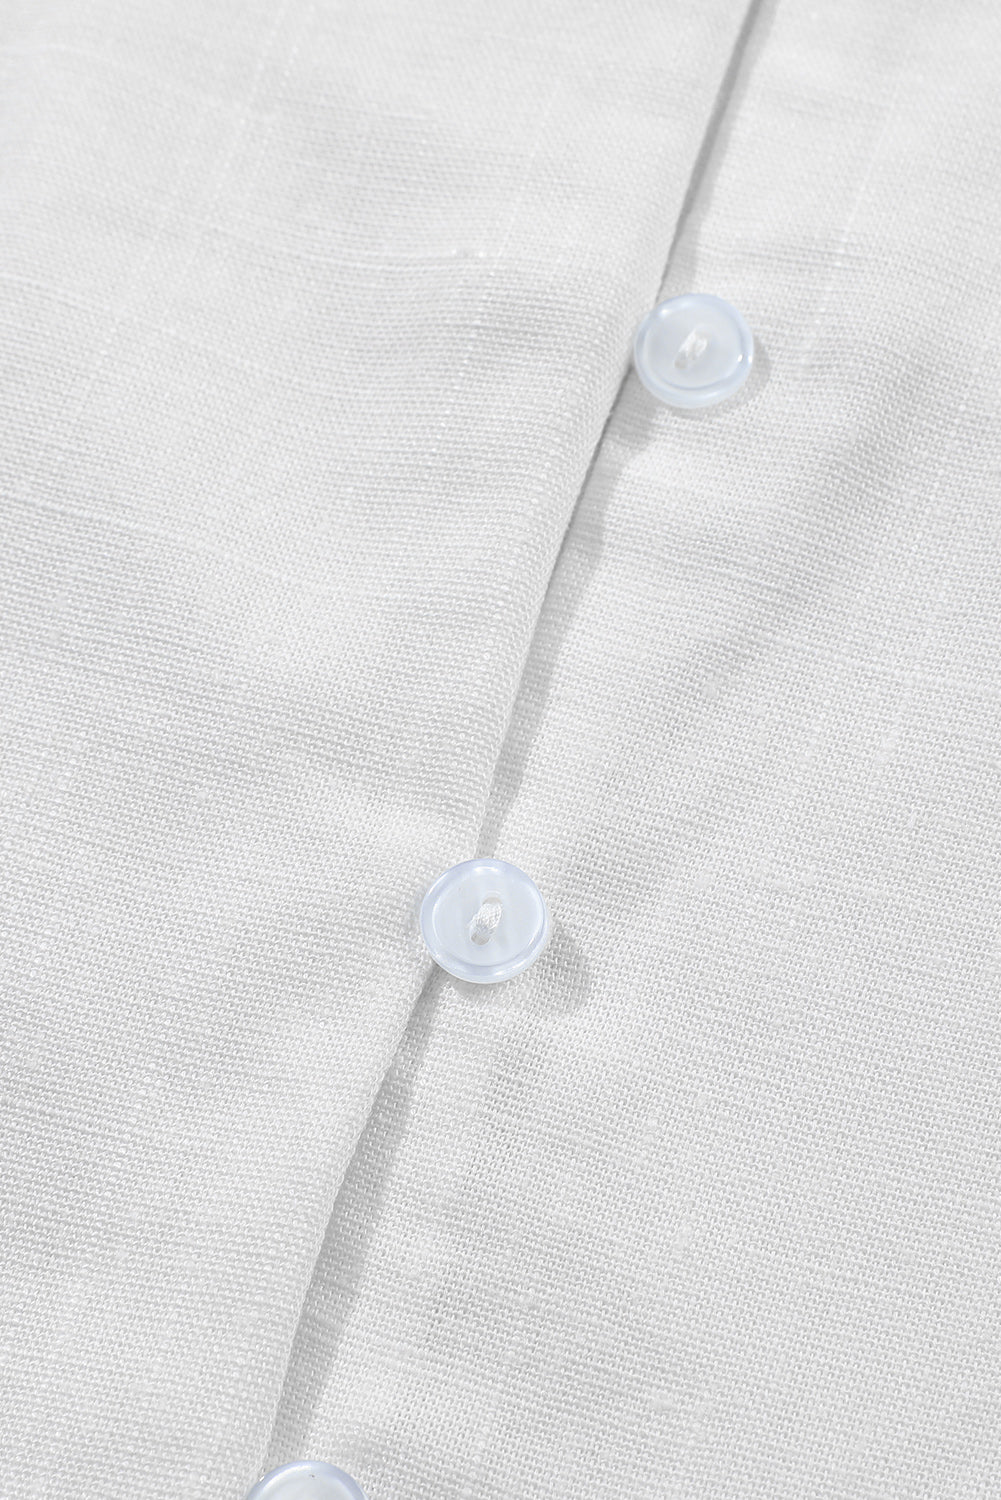 White V Neck Buttoned Tassel Bell Sleeve Shirt